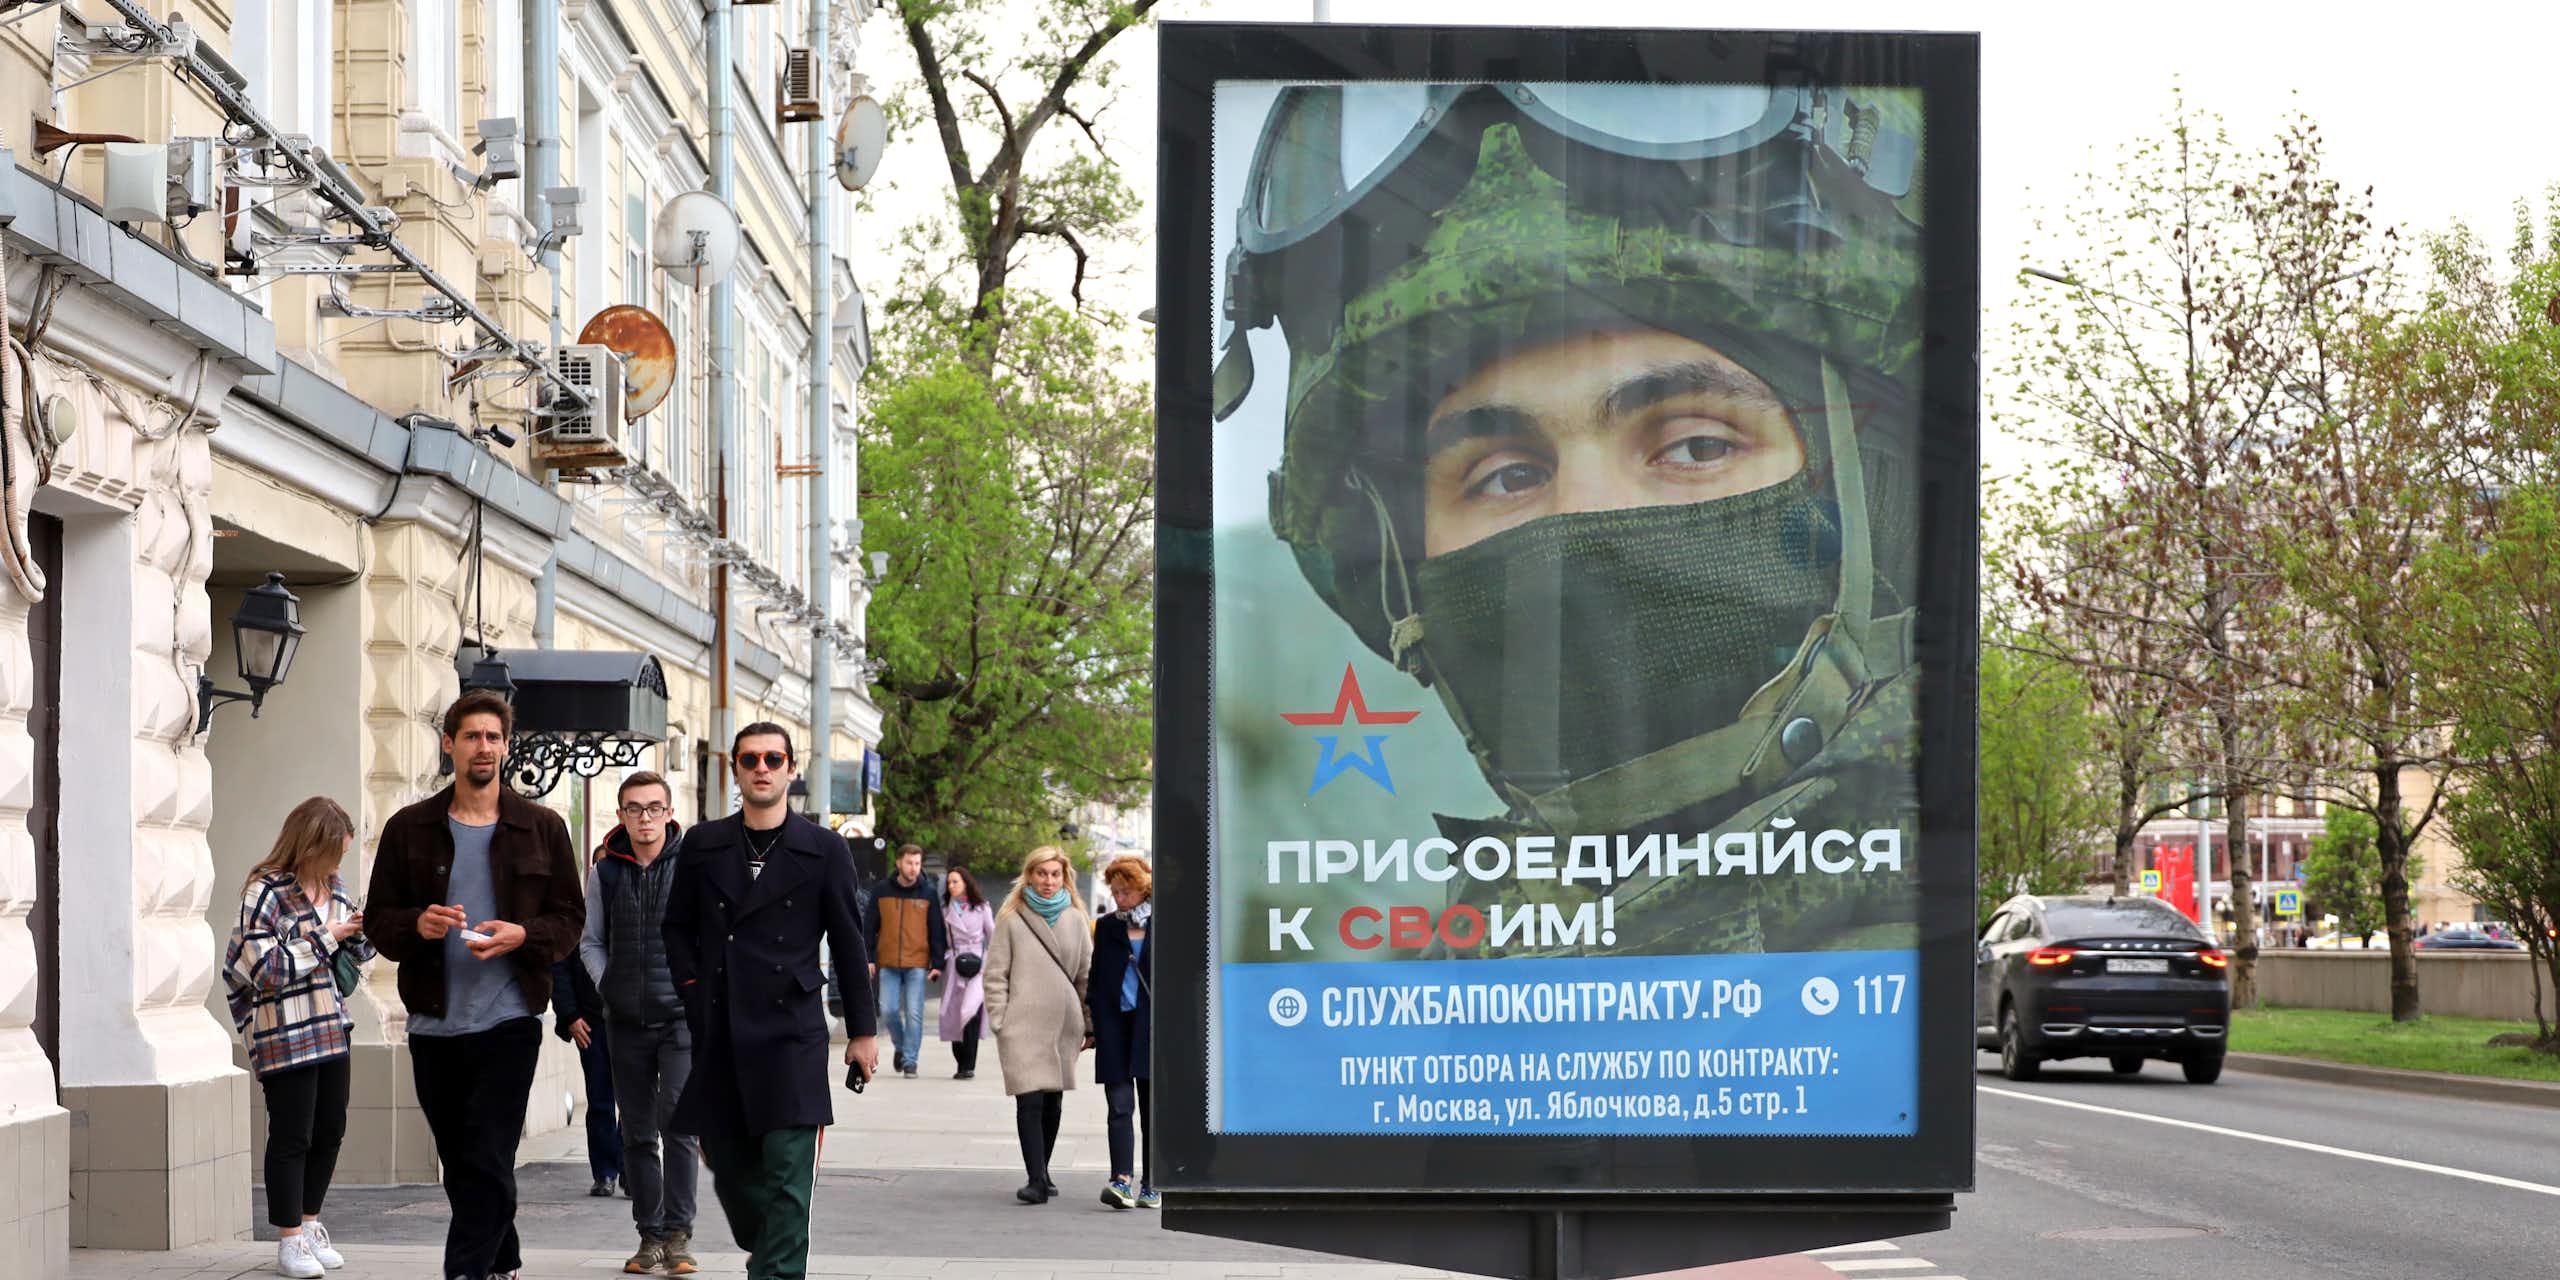 Des passants dans une rue de Moscou, devant une affiche de recrutement de l'armée russe